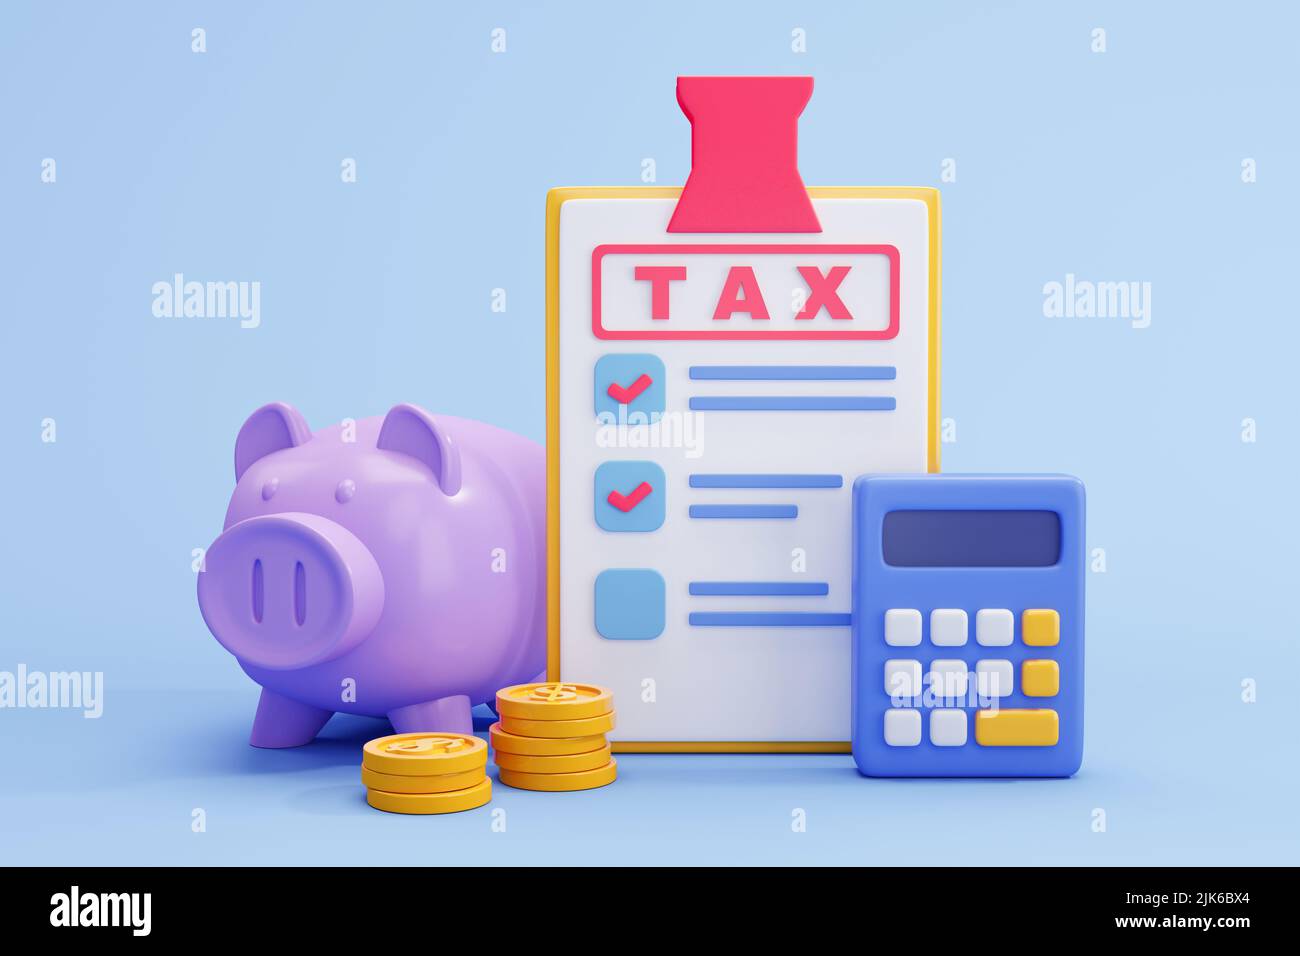 Pago de impuestos y concepto de negocio. Banco piggy, calculadora y formulario de impuestos sobre fondo azul. ilustración 3d Foto de stock